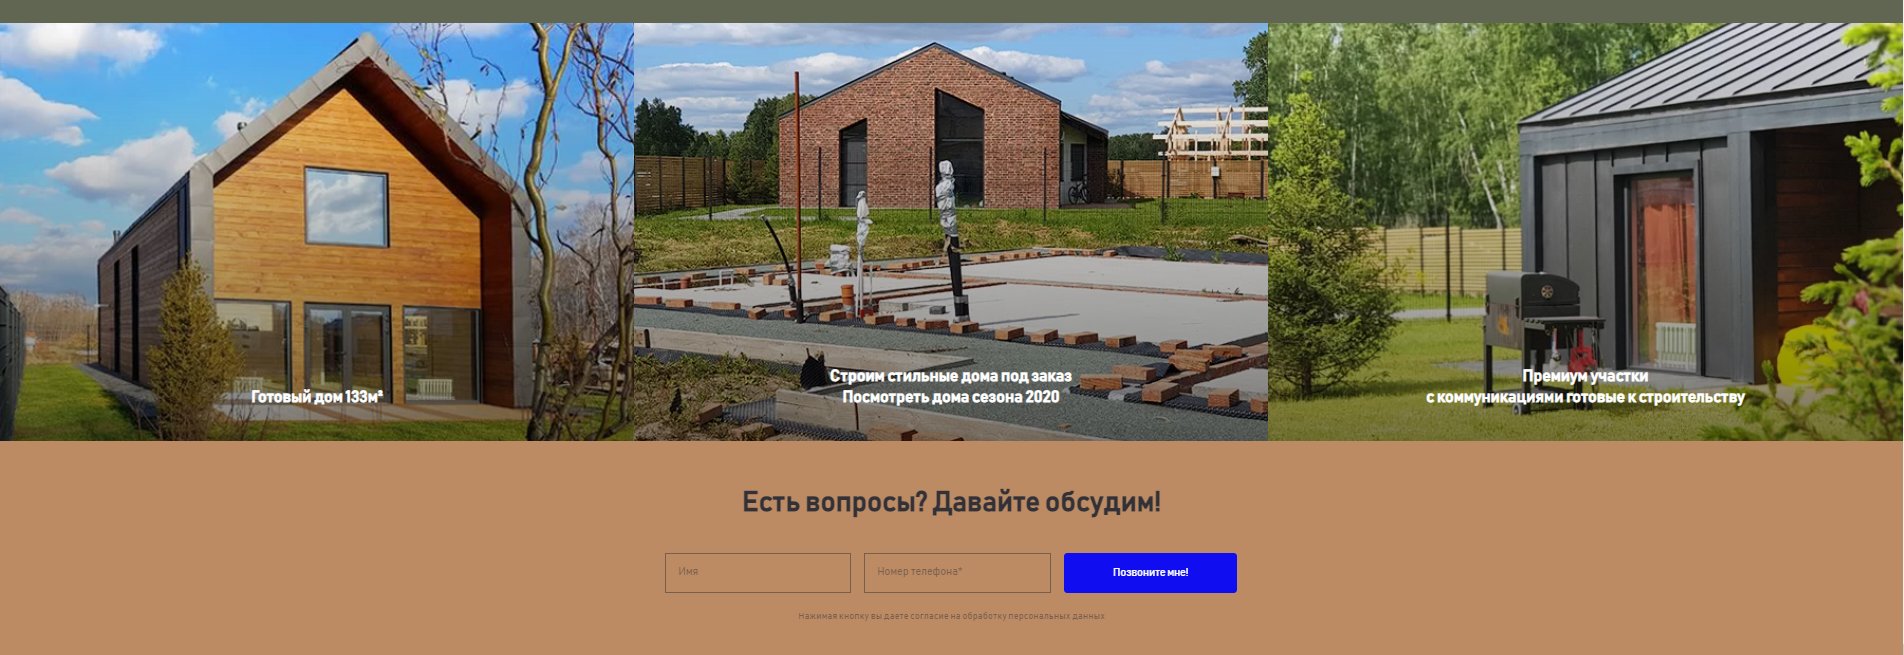 Официальный сайт коттеджного поселка Соловьи